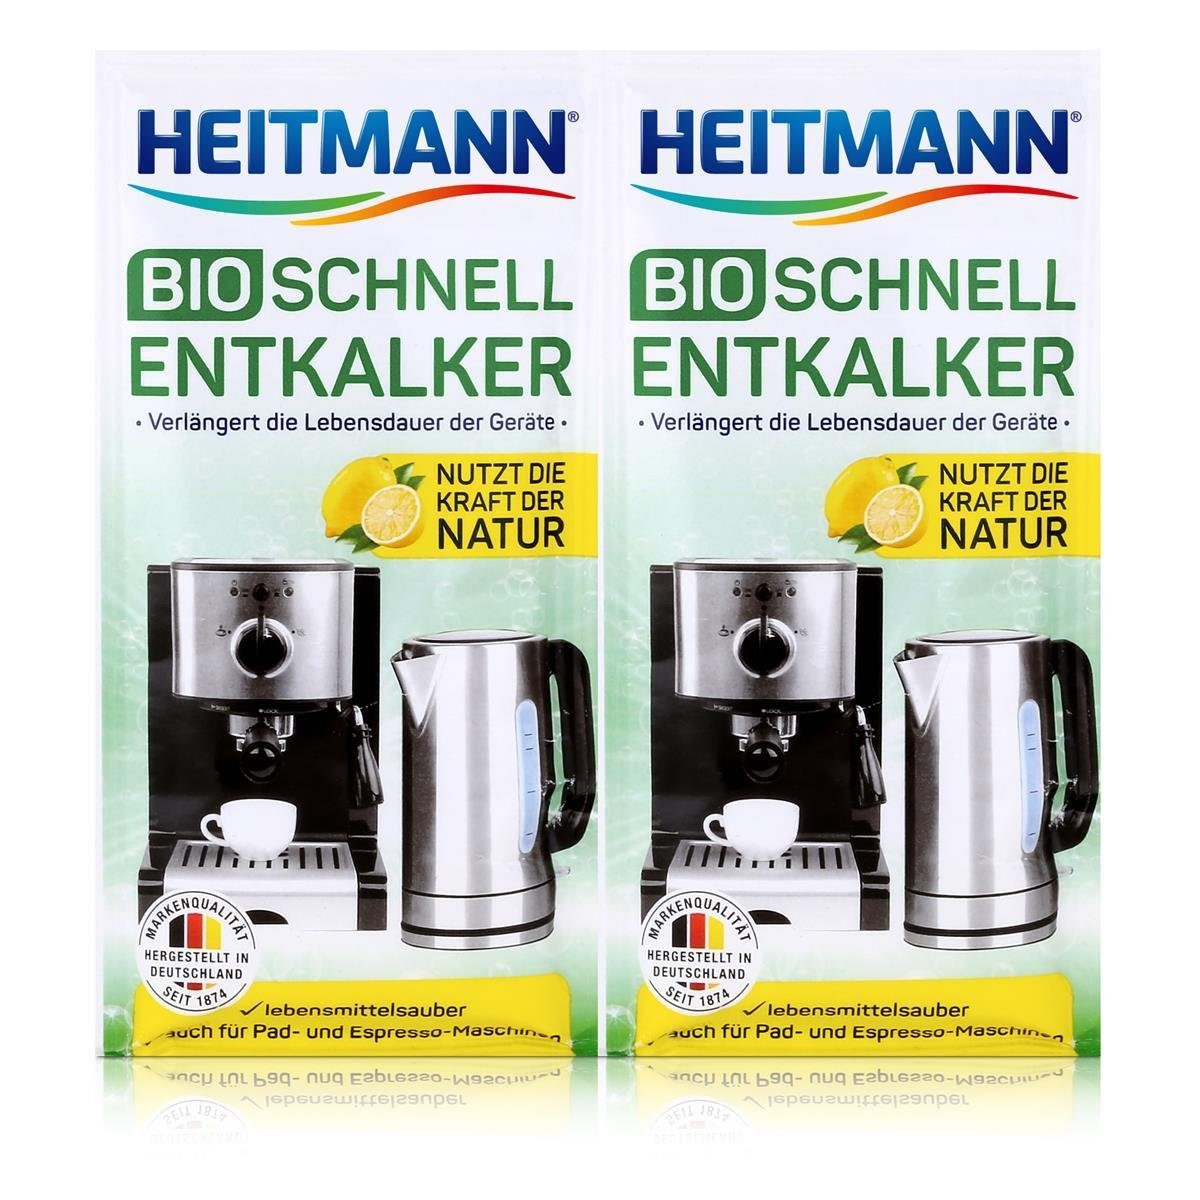 Bio 2x25g HEITMANN Natürlicher Heitmann - Entkalker Schnell-Entkalker Universalentkalker